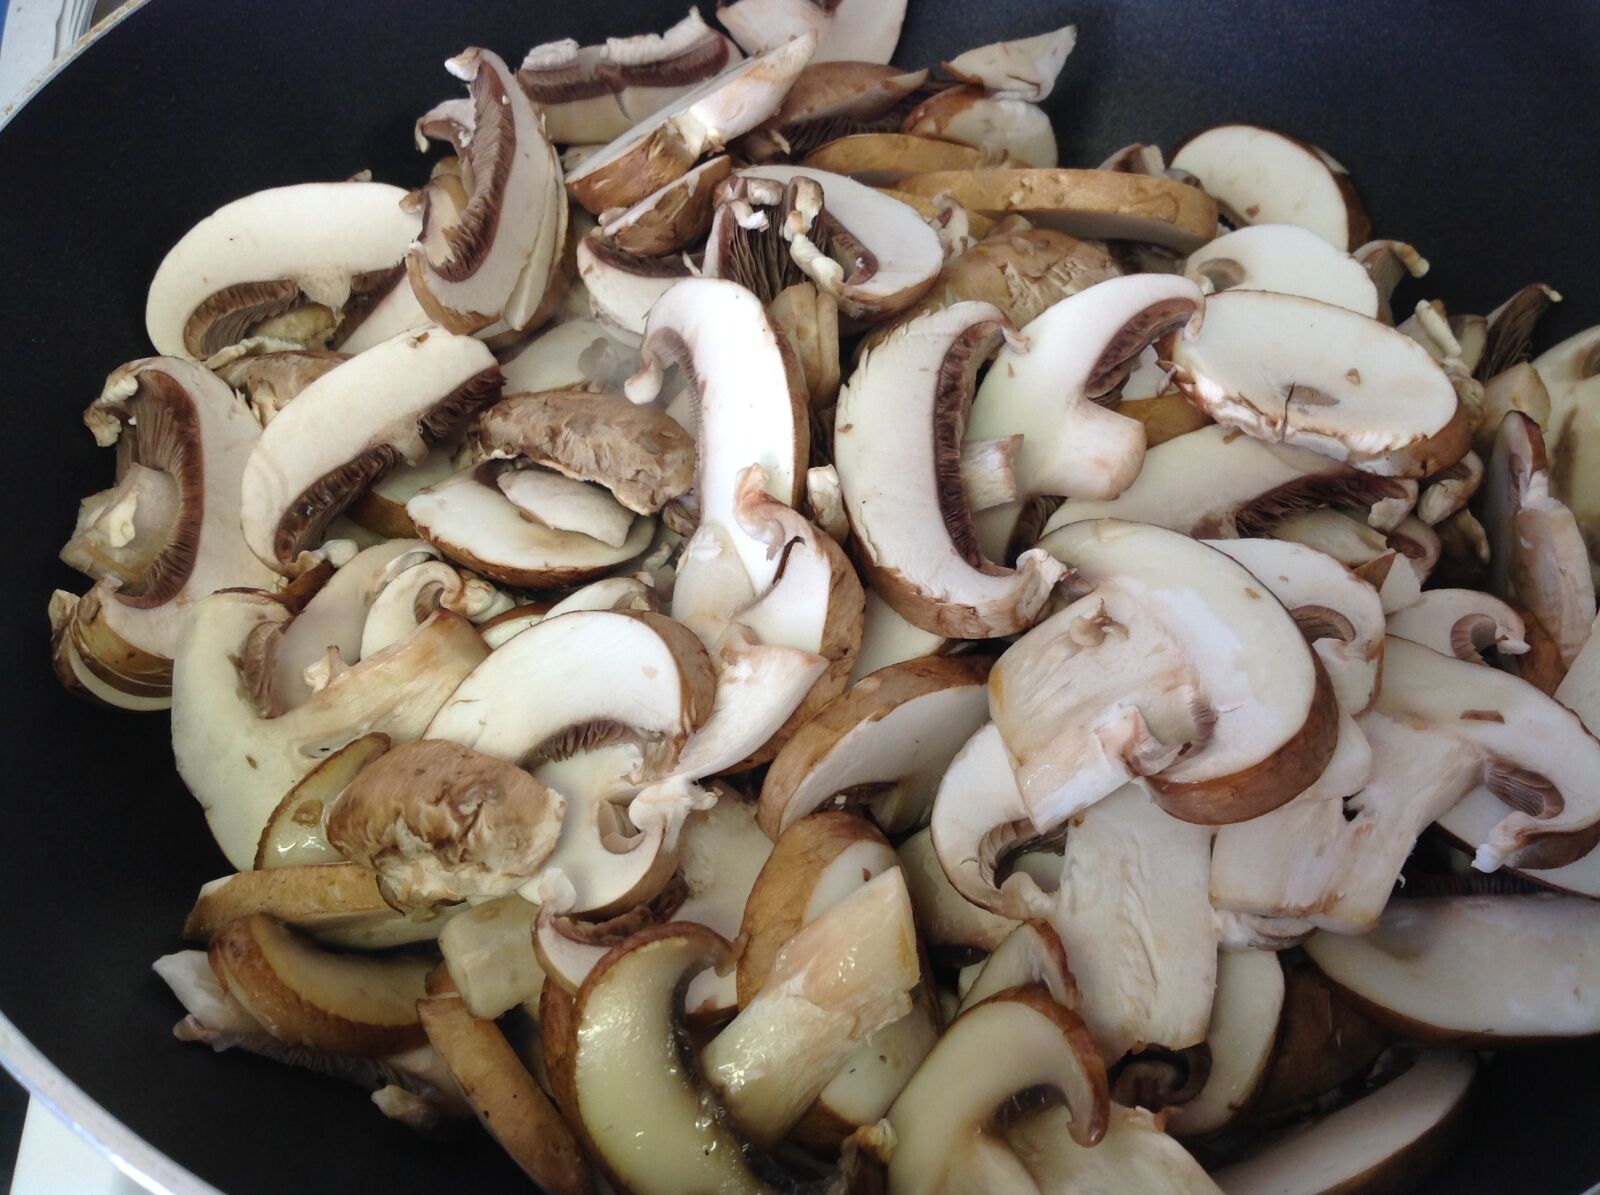 Apple iPad sample photo. Fried mushroom, vegetable, mushroom photography